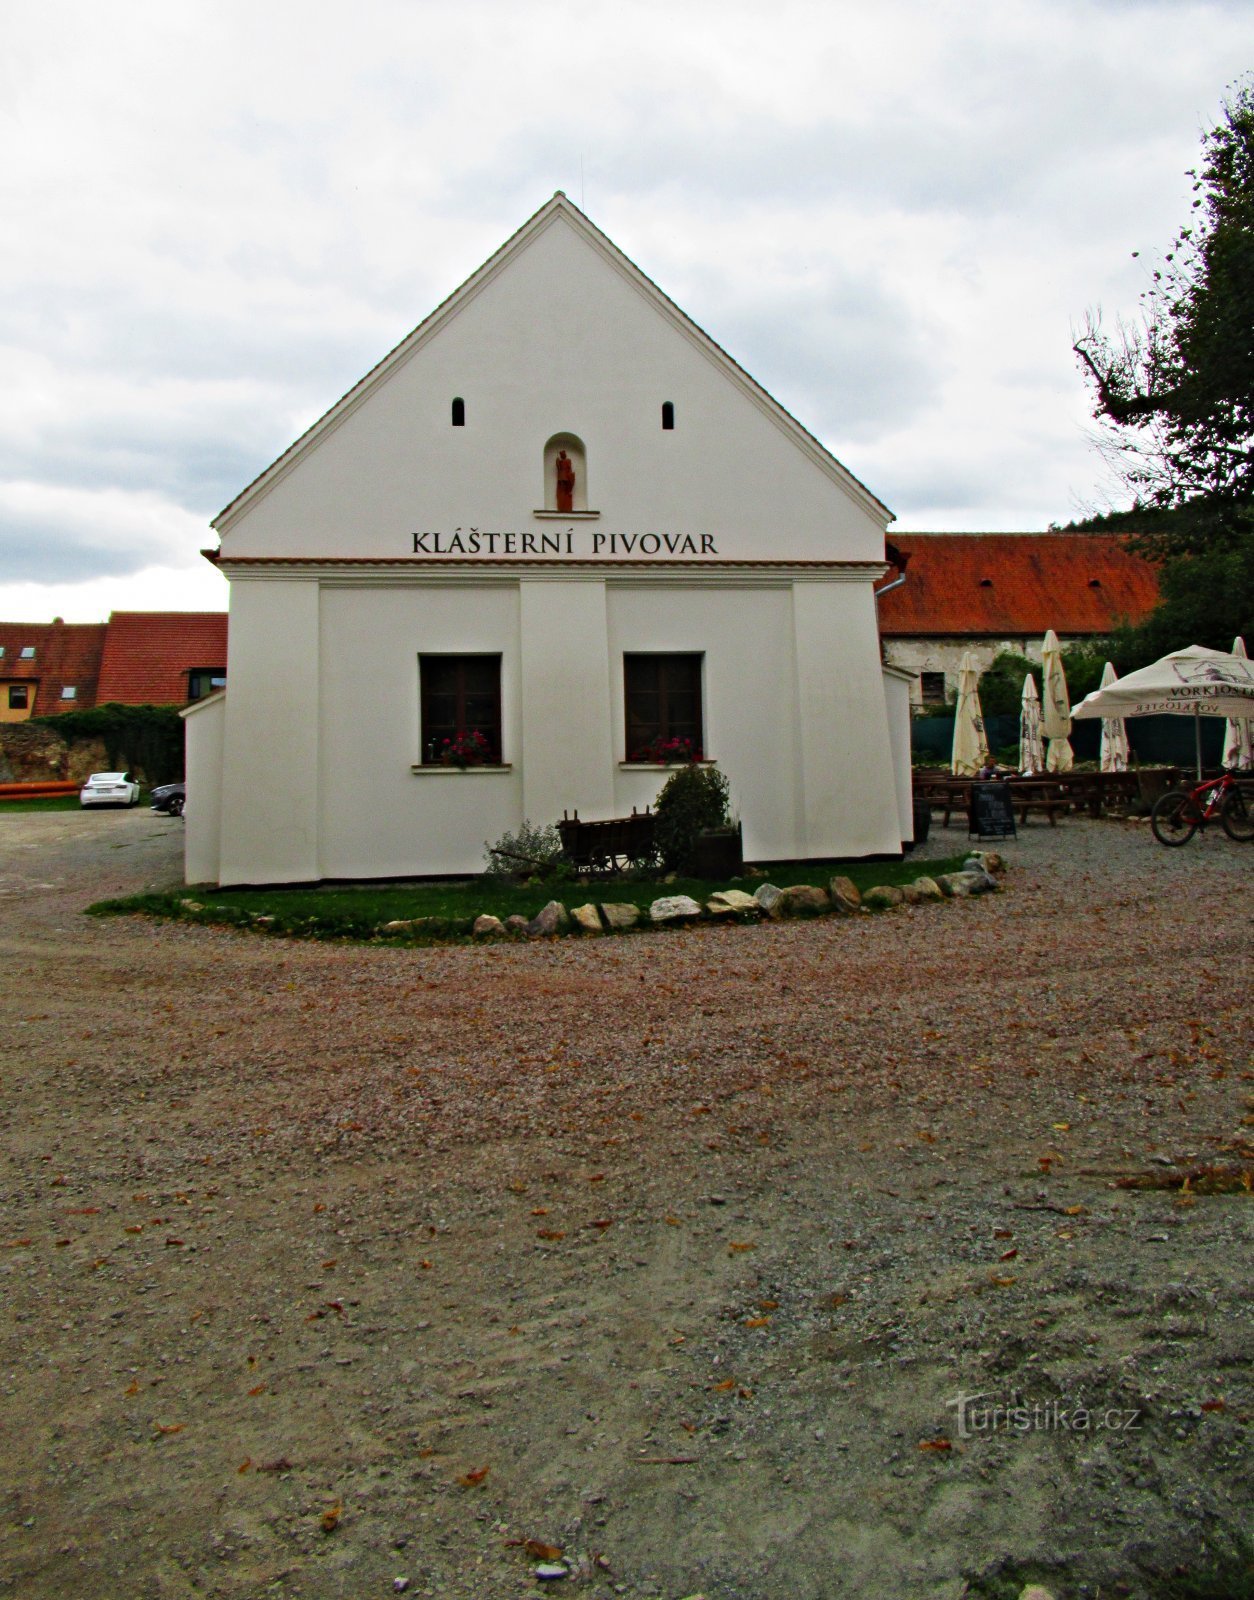 Ett litet familjebryggeri i Předklášteří nära Tišnov